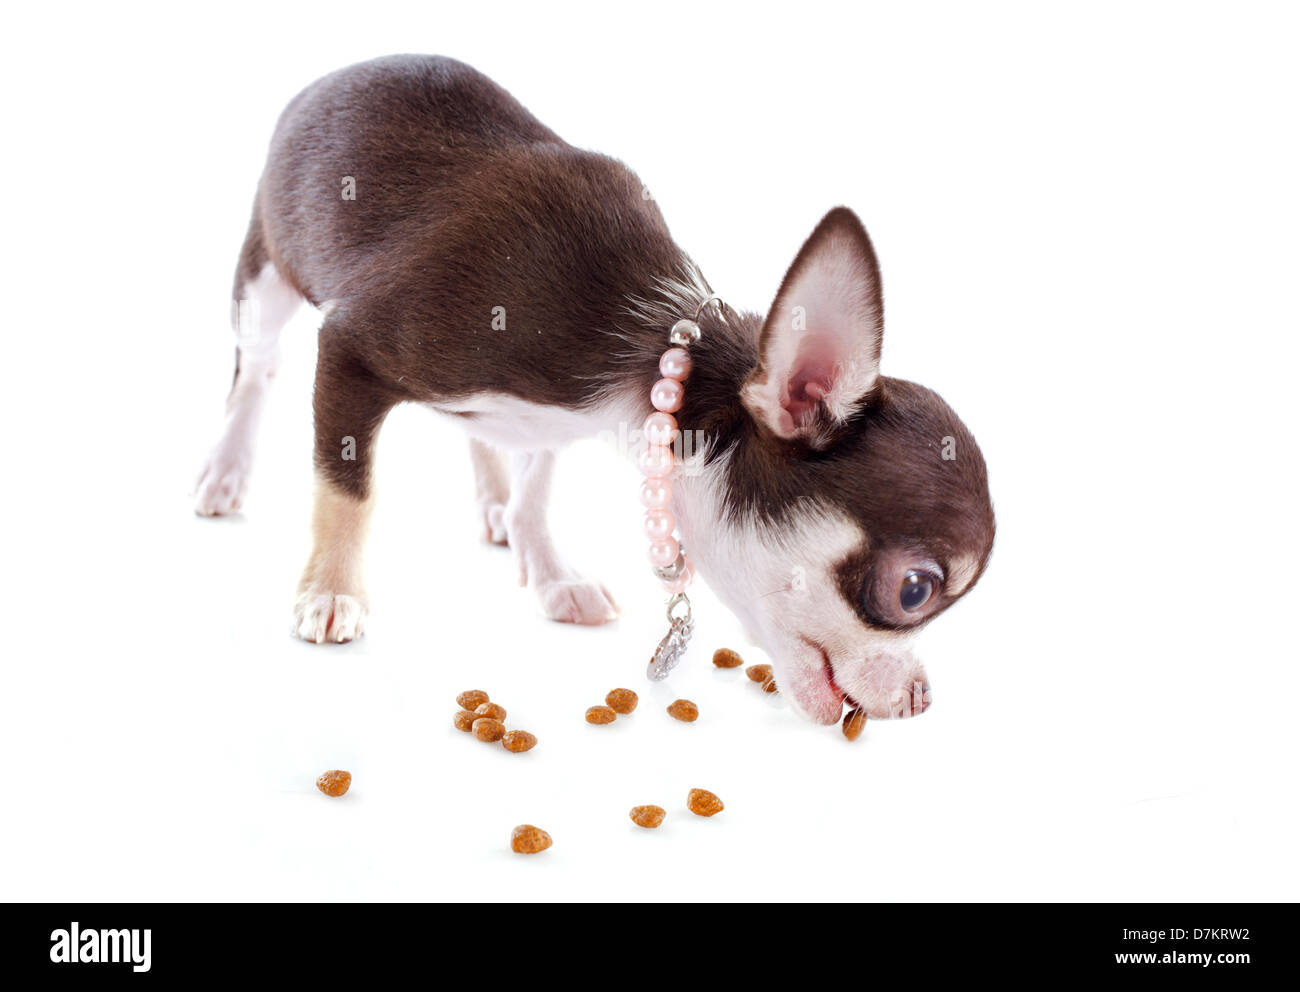 Porträt von einem süßen reinrassigen Welpen Chihuahua Essen Trockenfutter  vor weißem Hintergrund Stockfotografie - Alamy